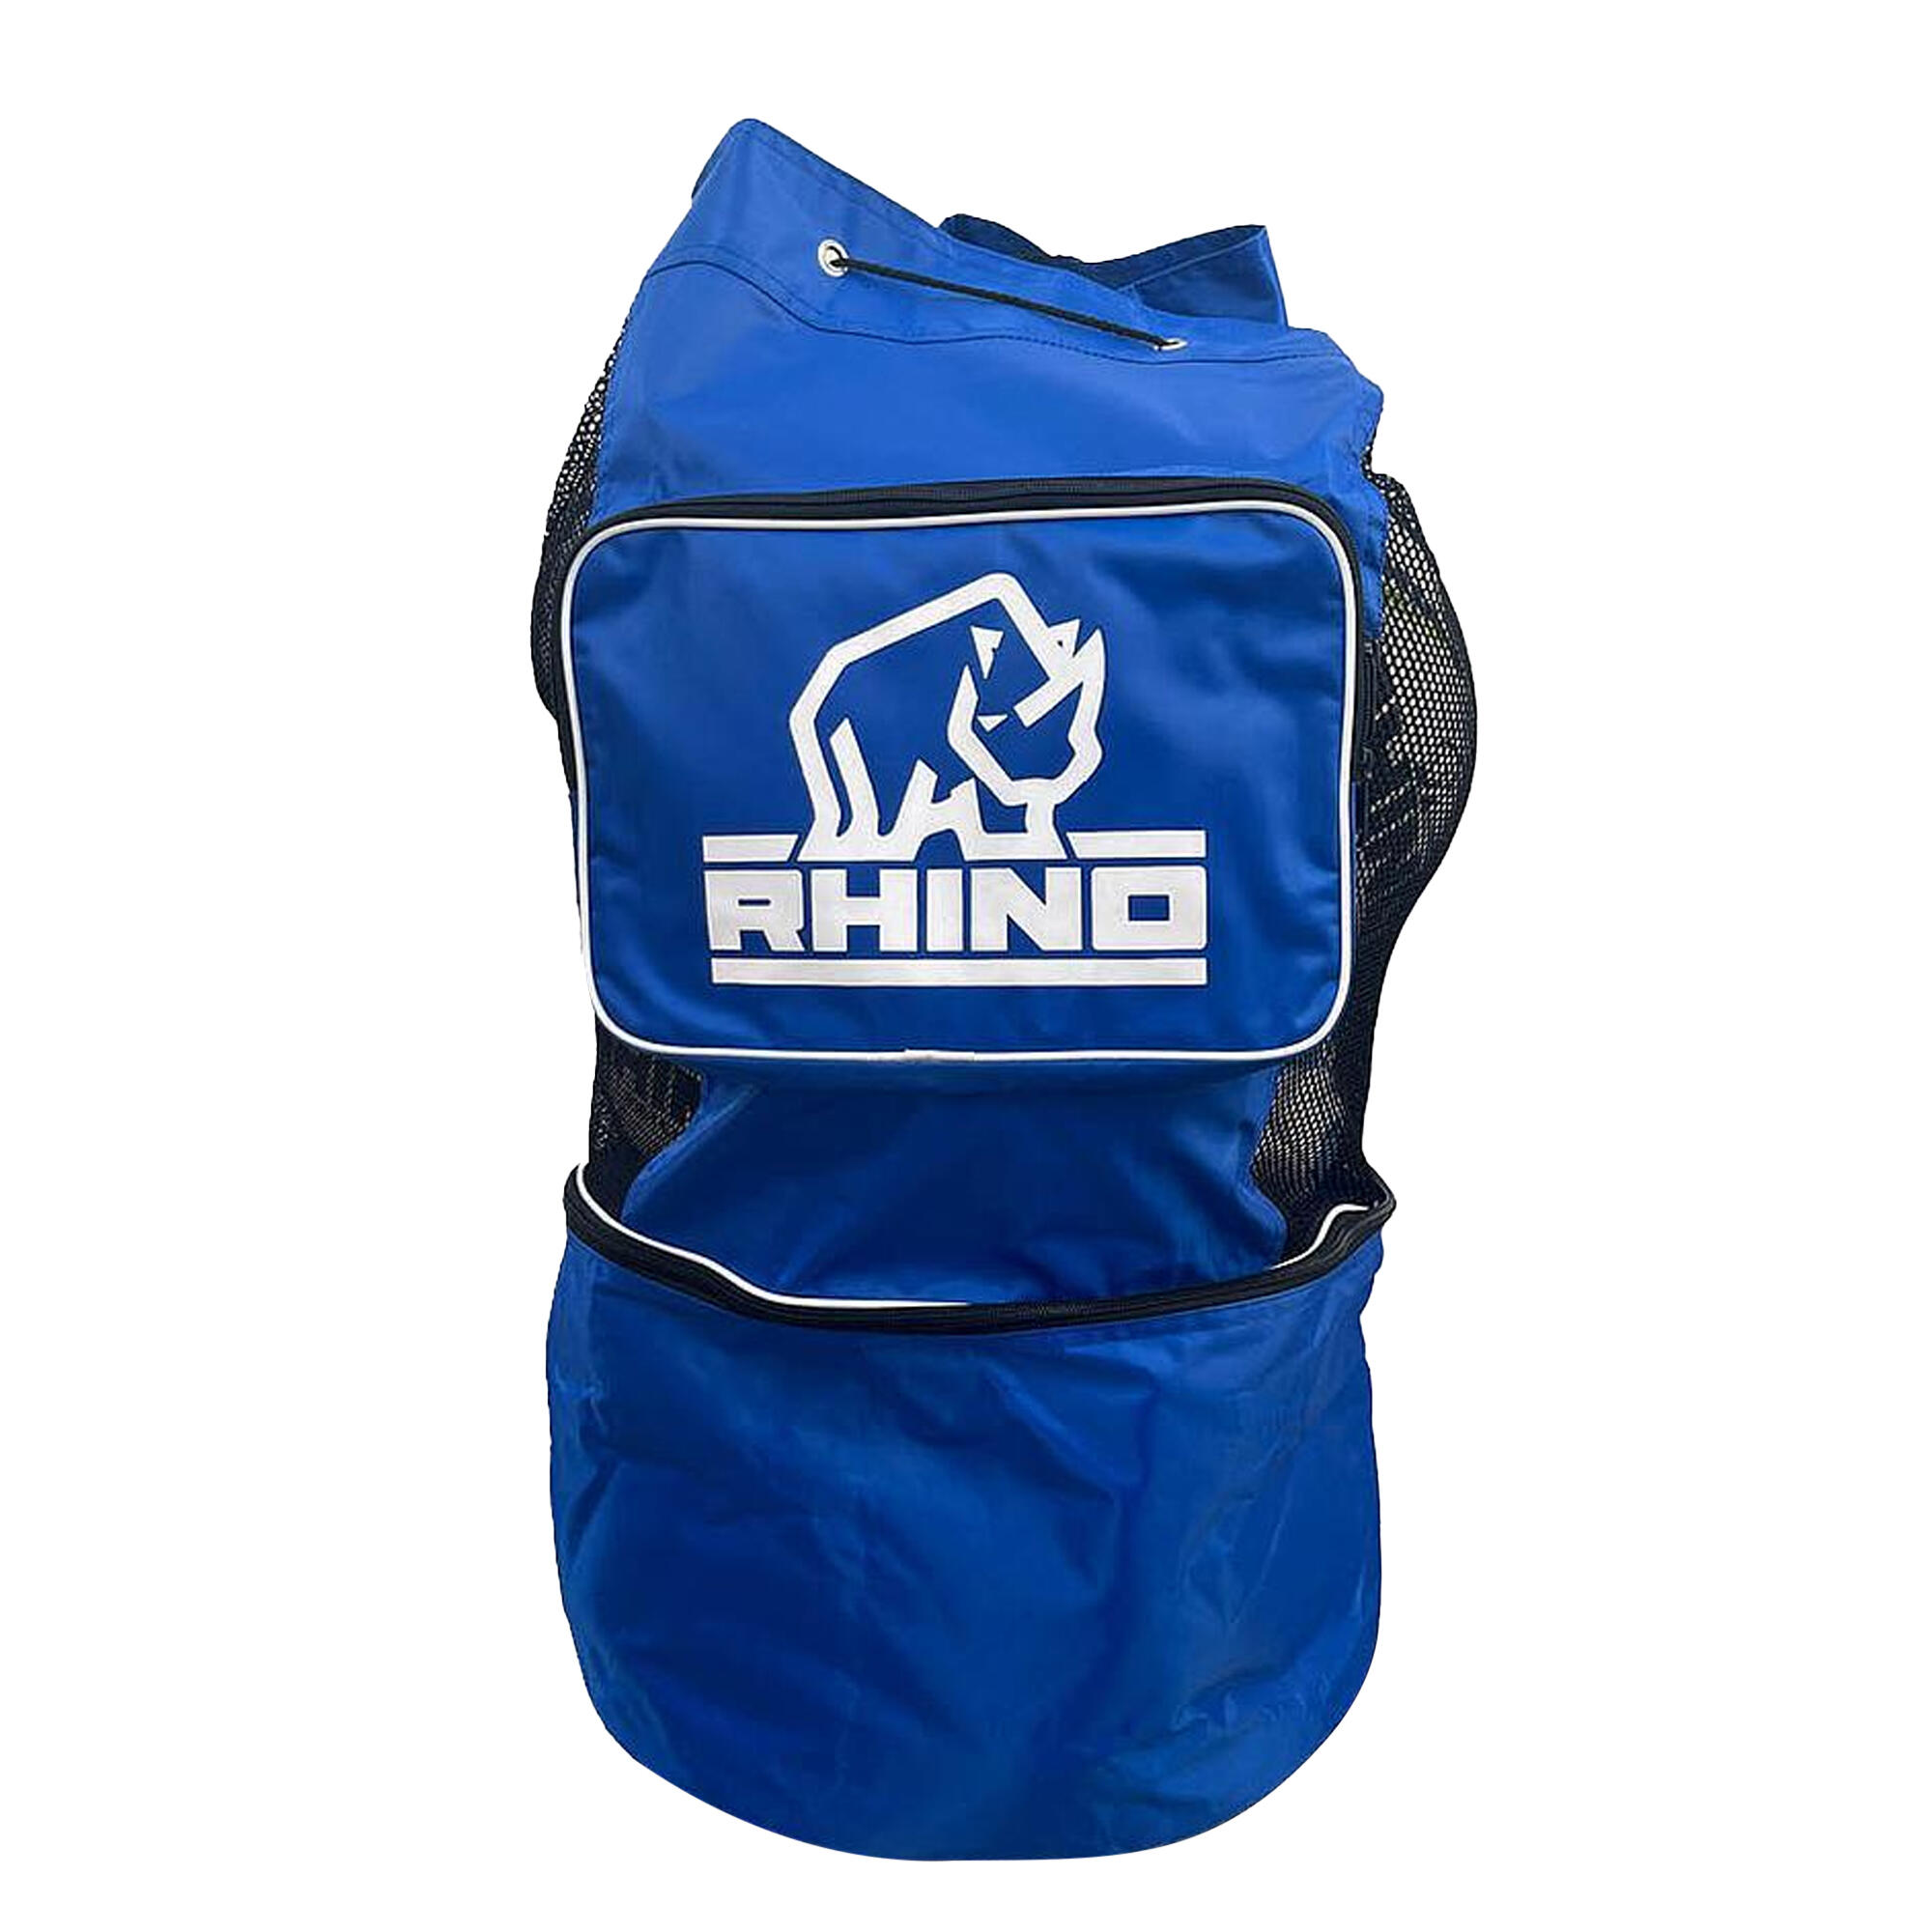 RHINO Coaches Ball Bag (Blue)